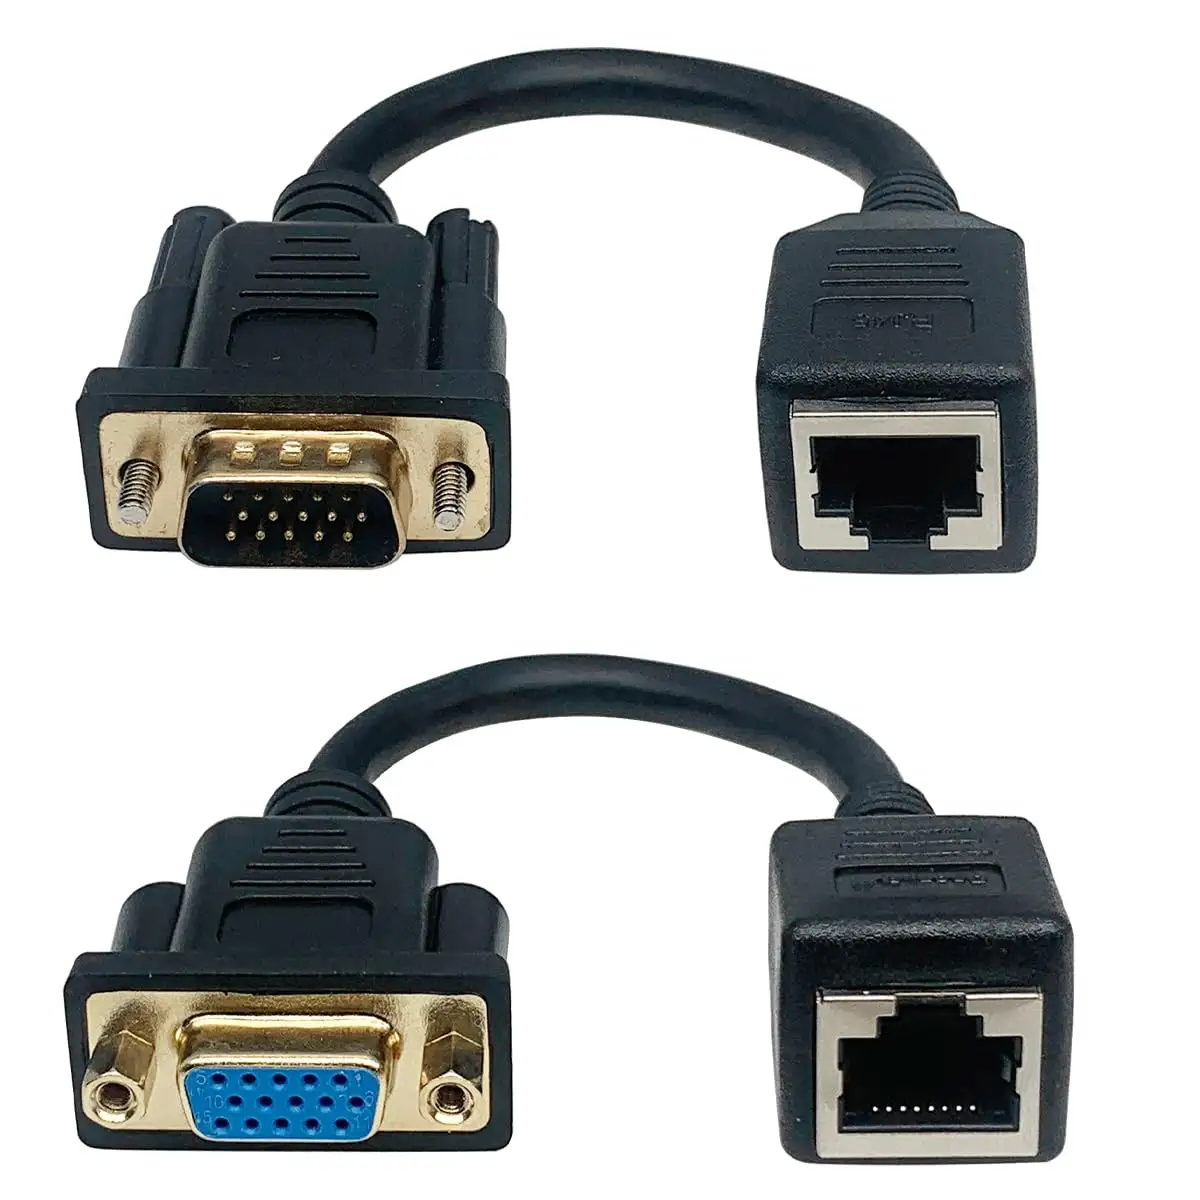 VGA a RJ45 femmina cavo di estensione, VGA 15 Pin maschio femmina a RJ45 Ethernet LAN Console per il Video multimediale ed estendere la distanza